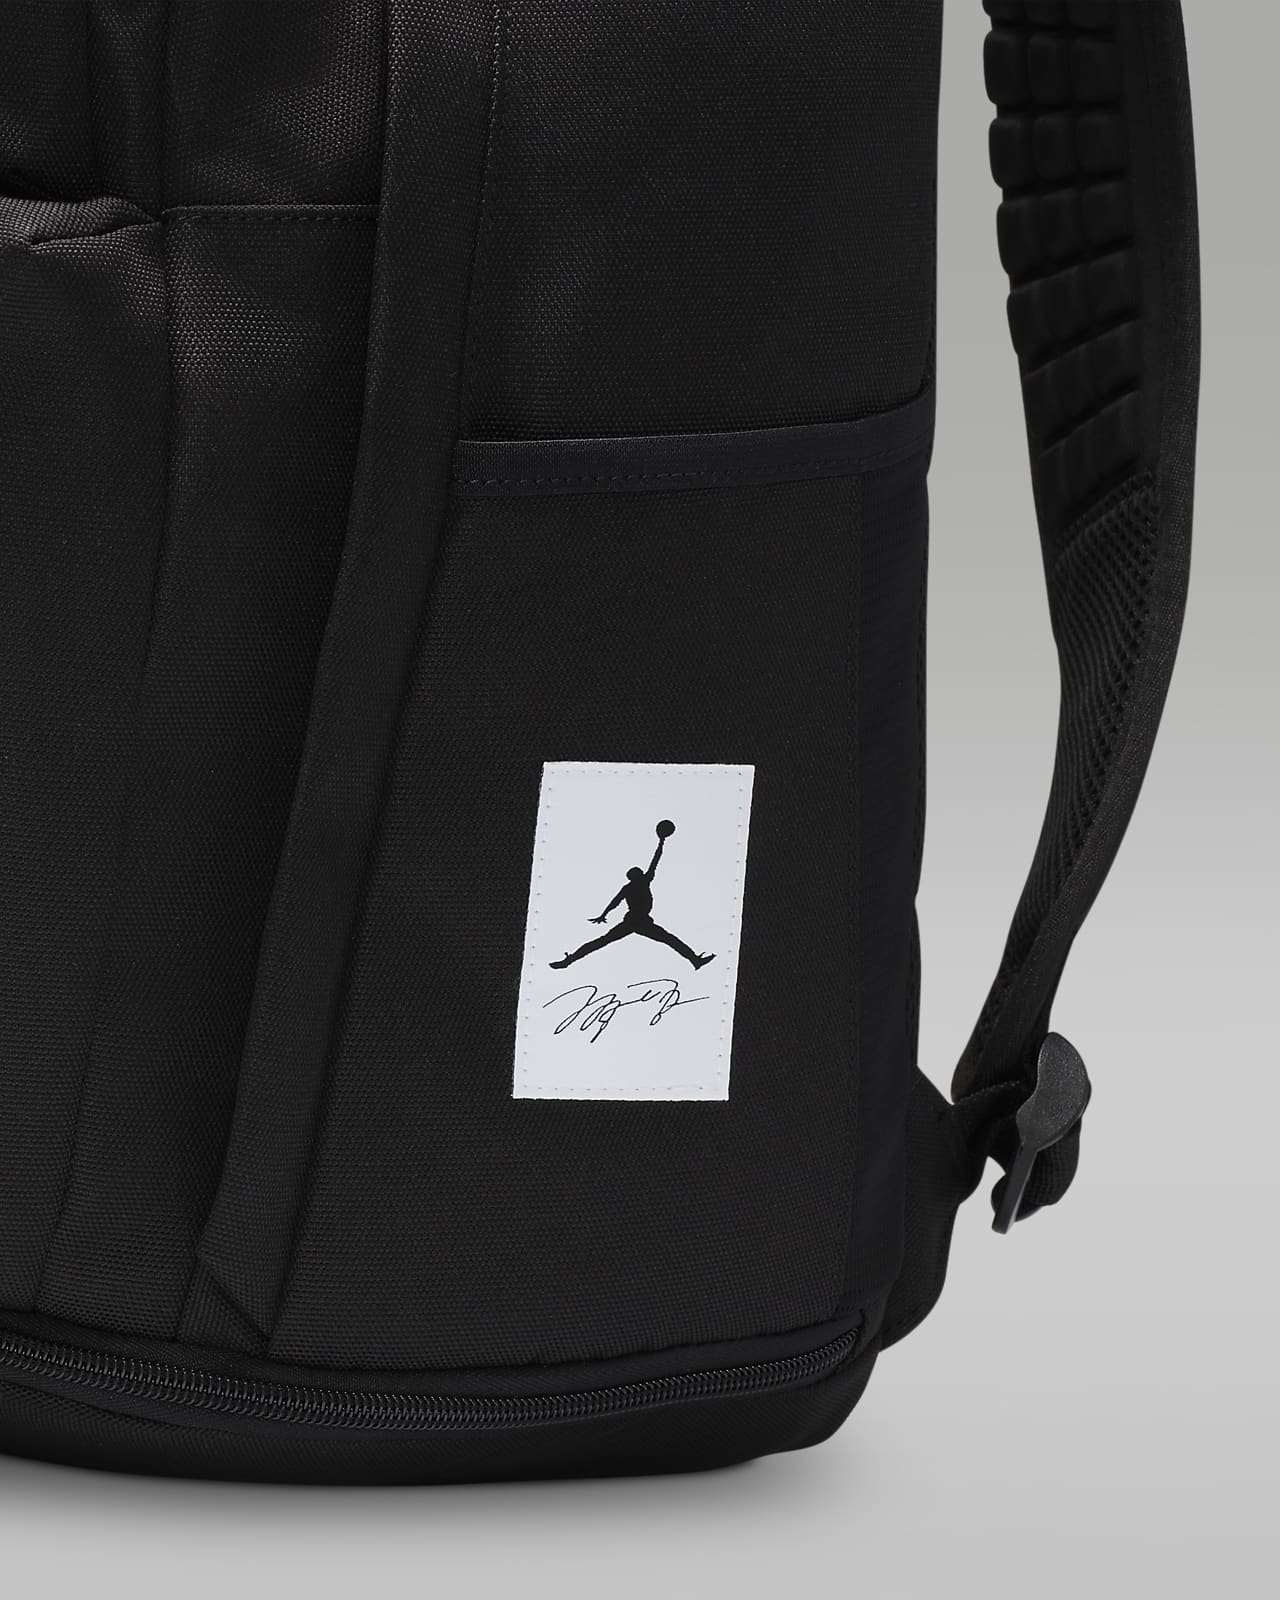 Mochila Jordan Sport Backpack Gris Unisex